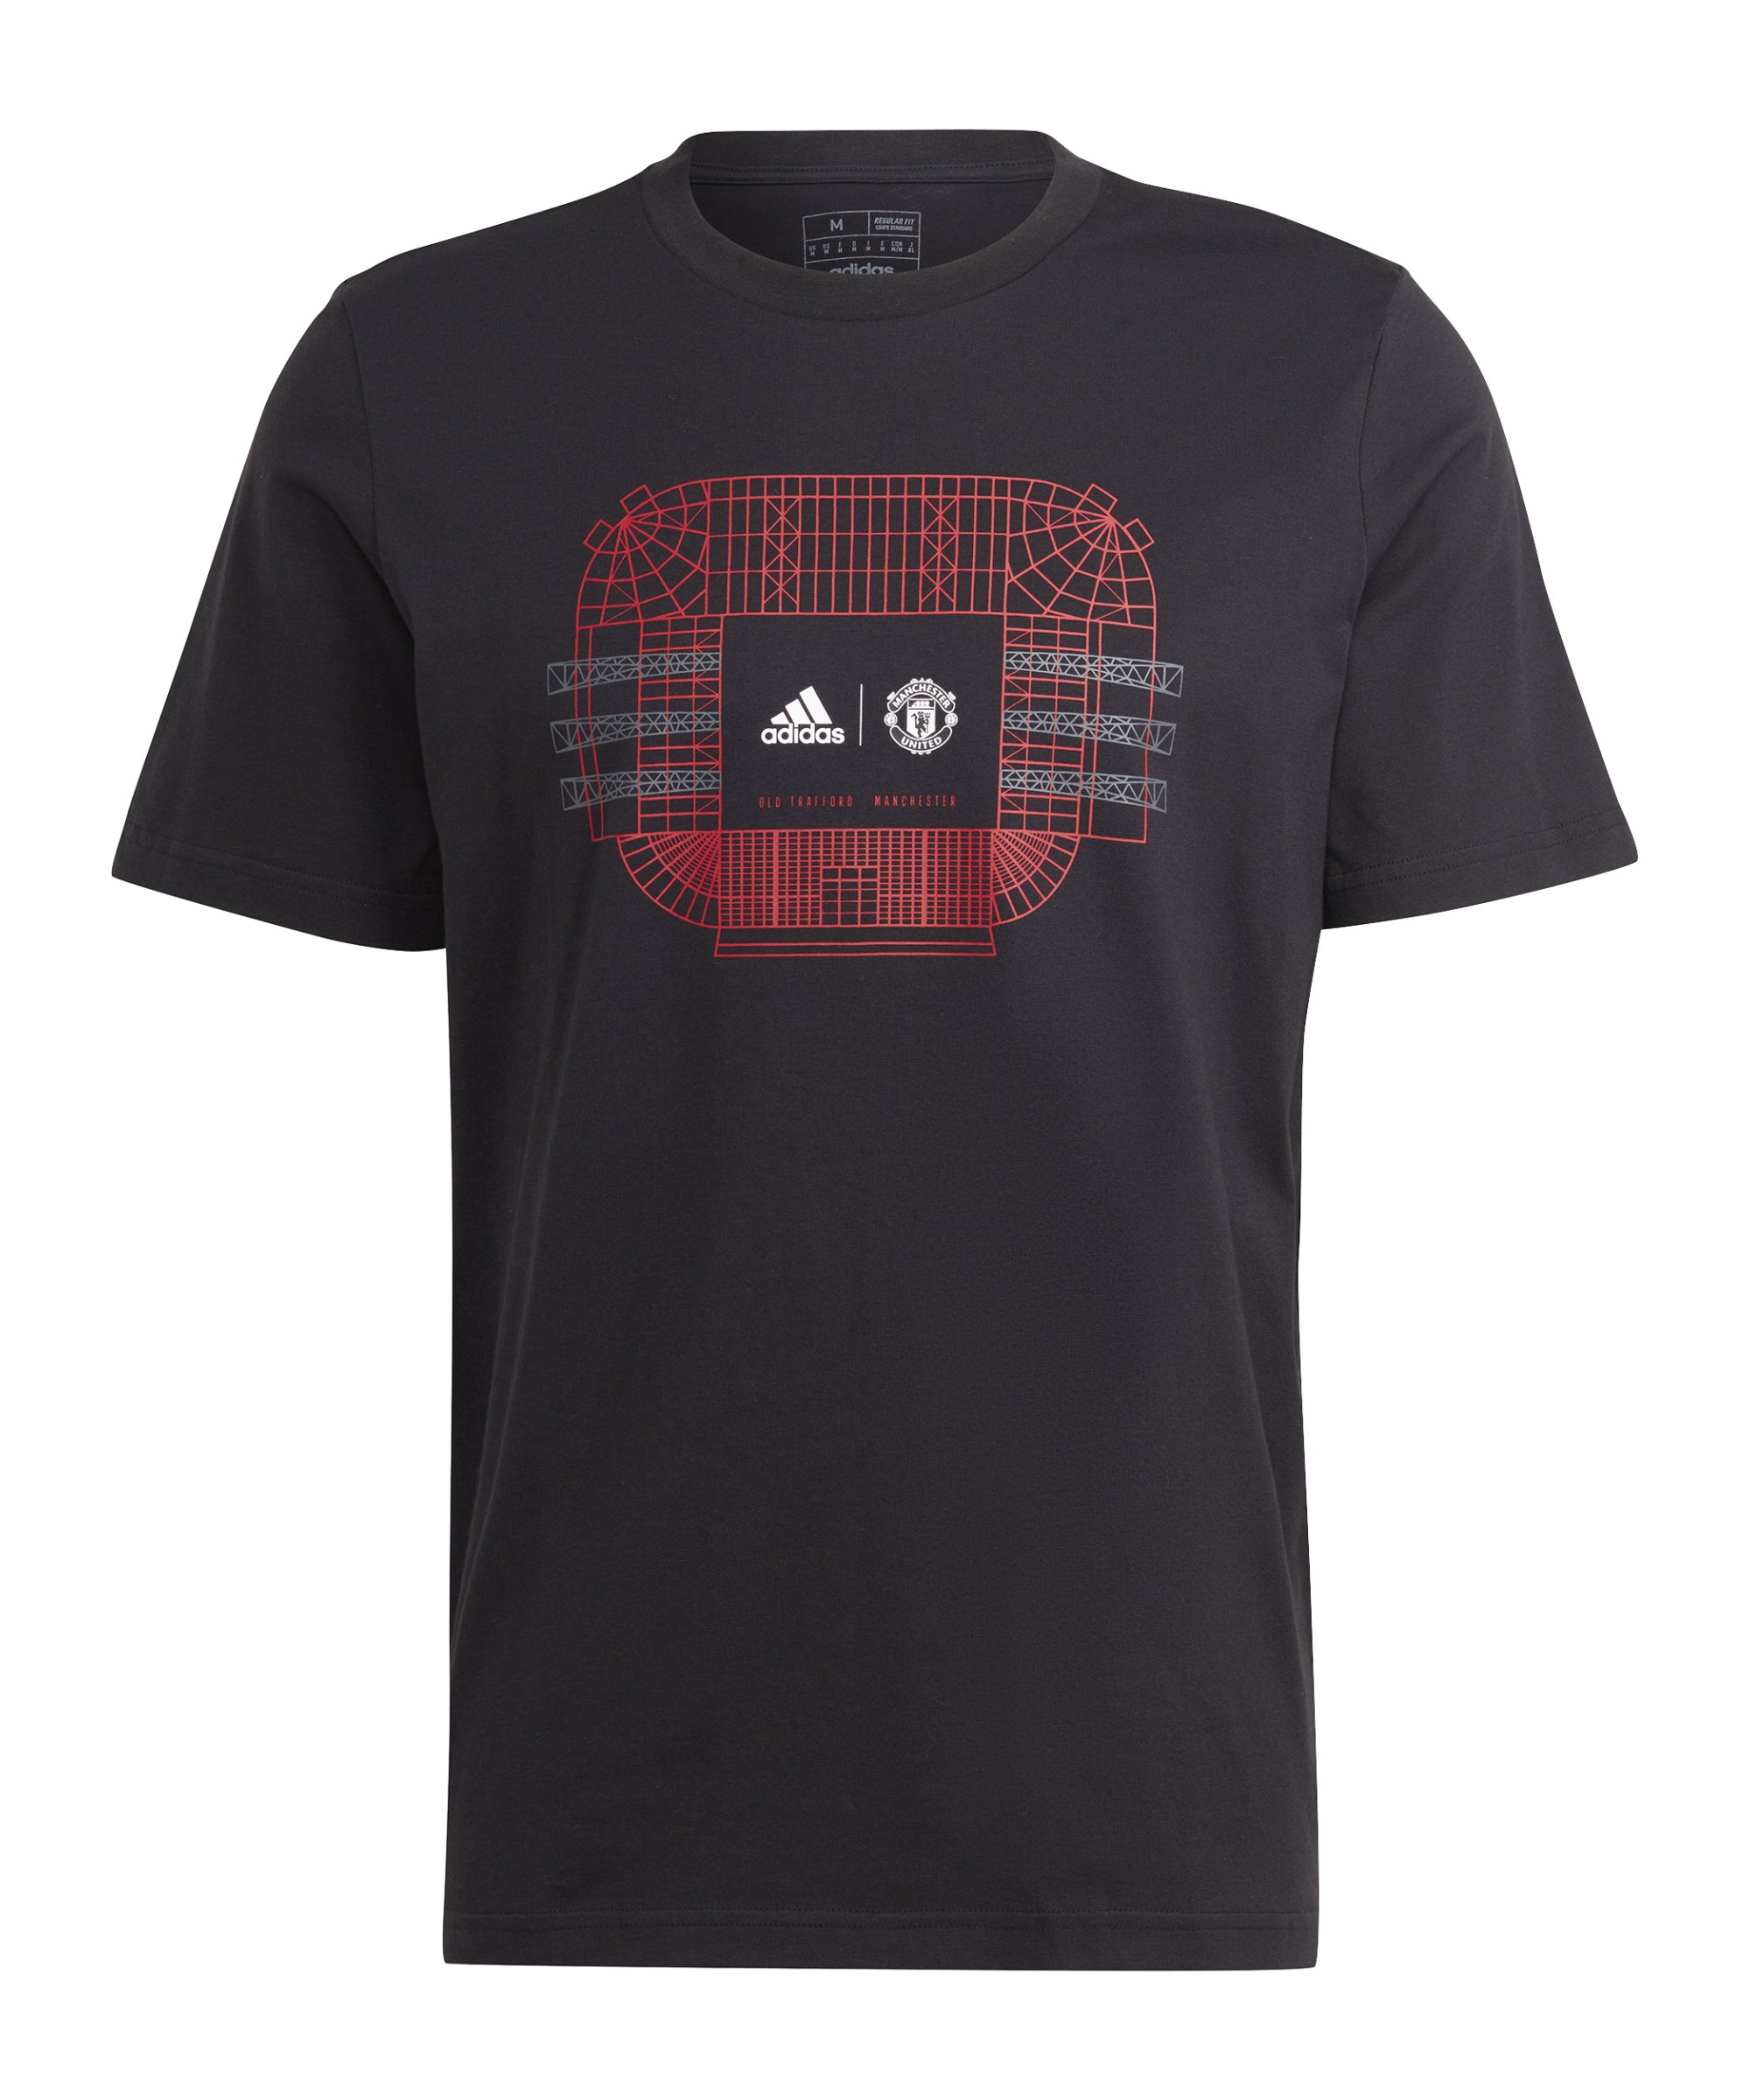 adidas Manchester United Graphic T-Shirt Schwarz - schwarz